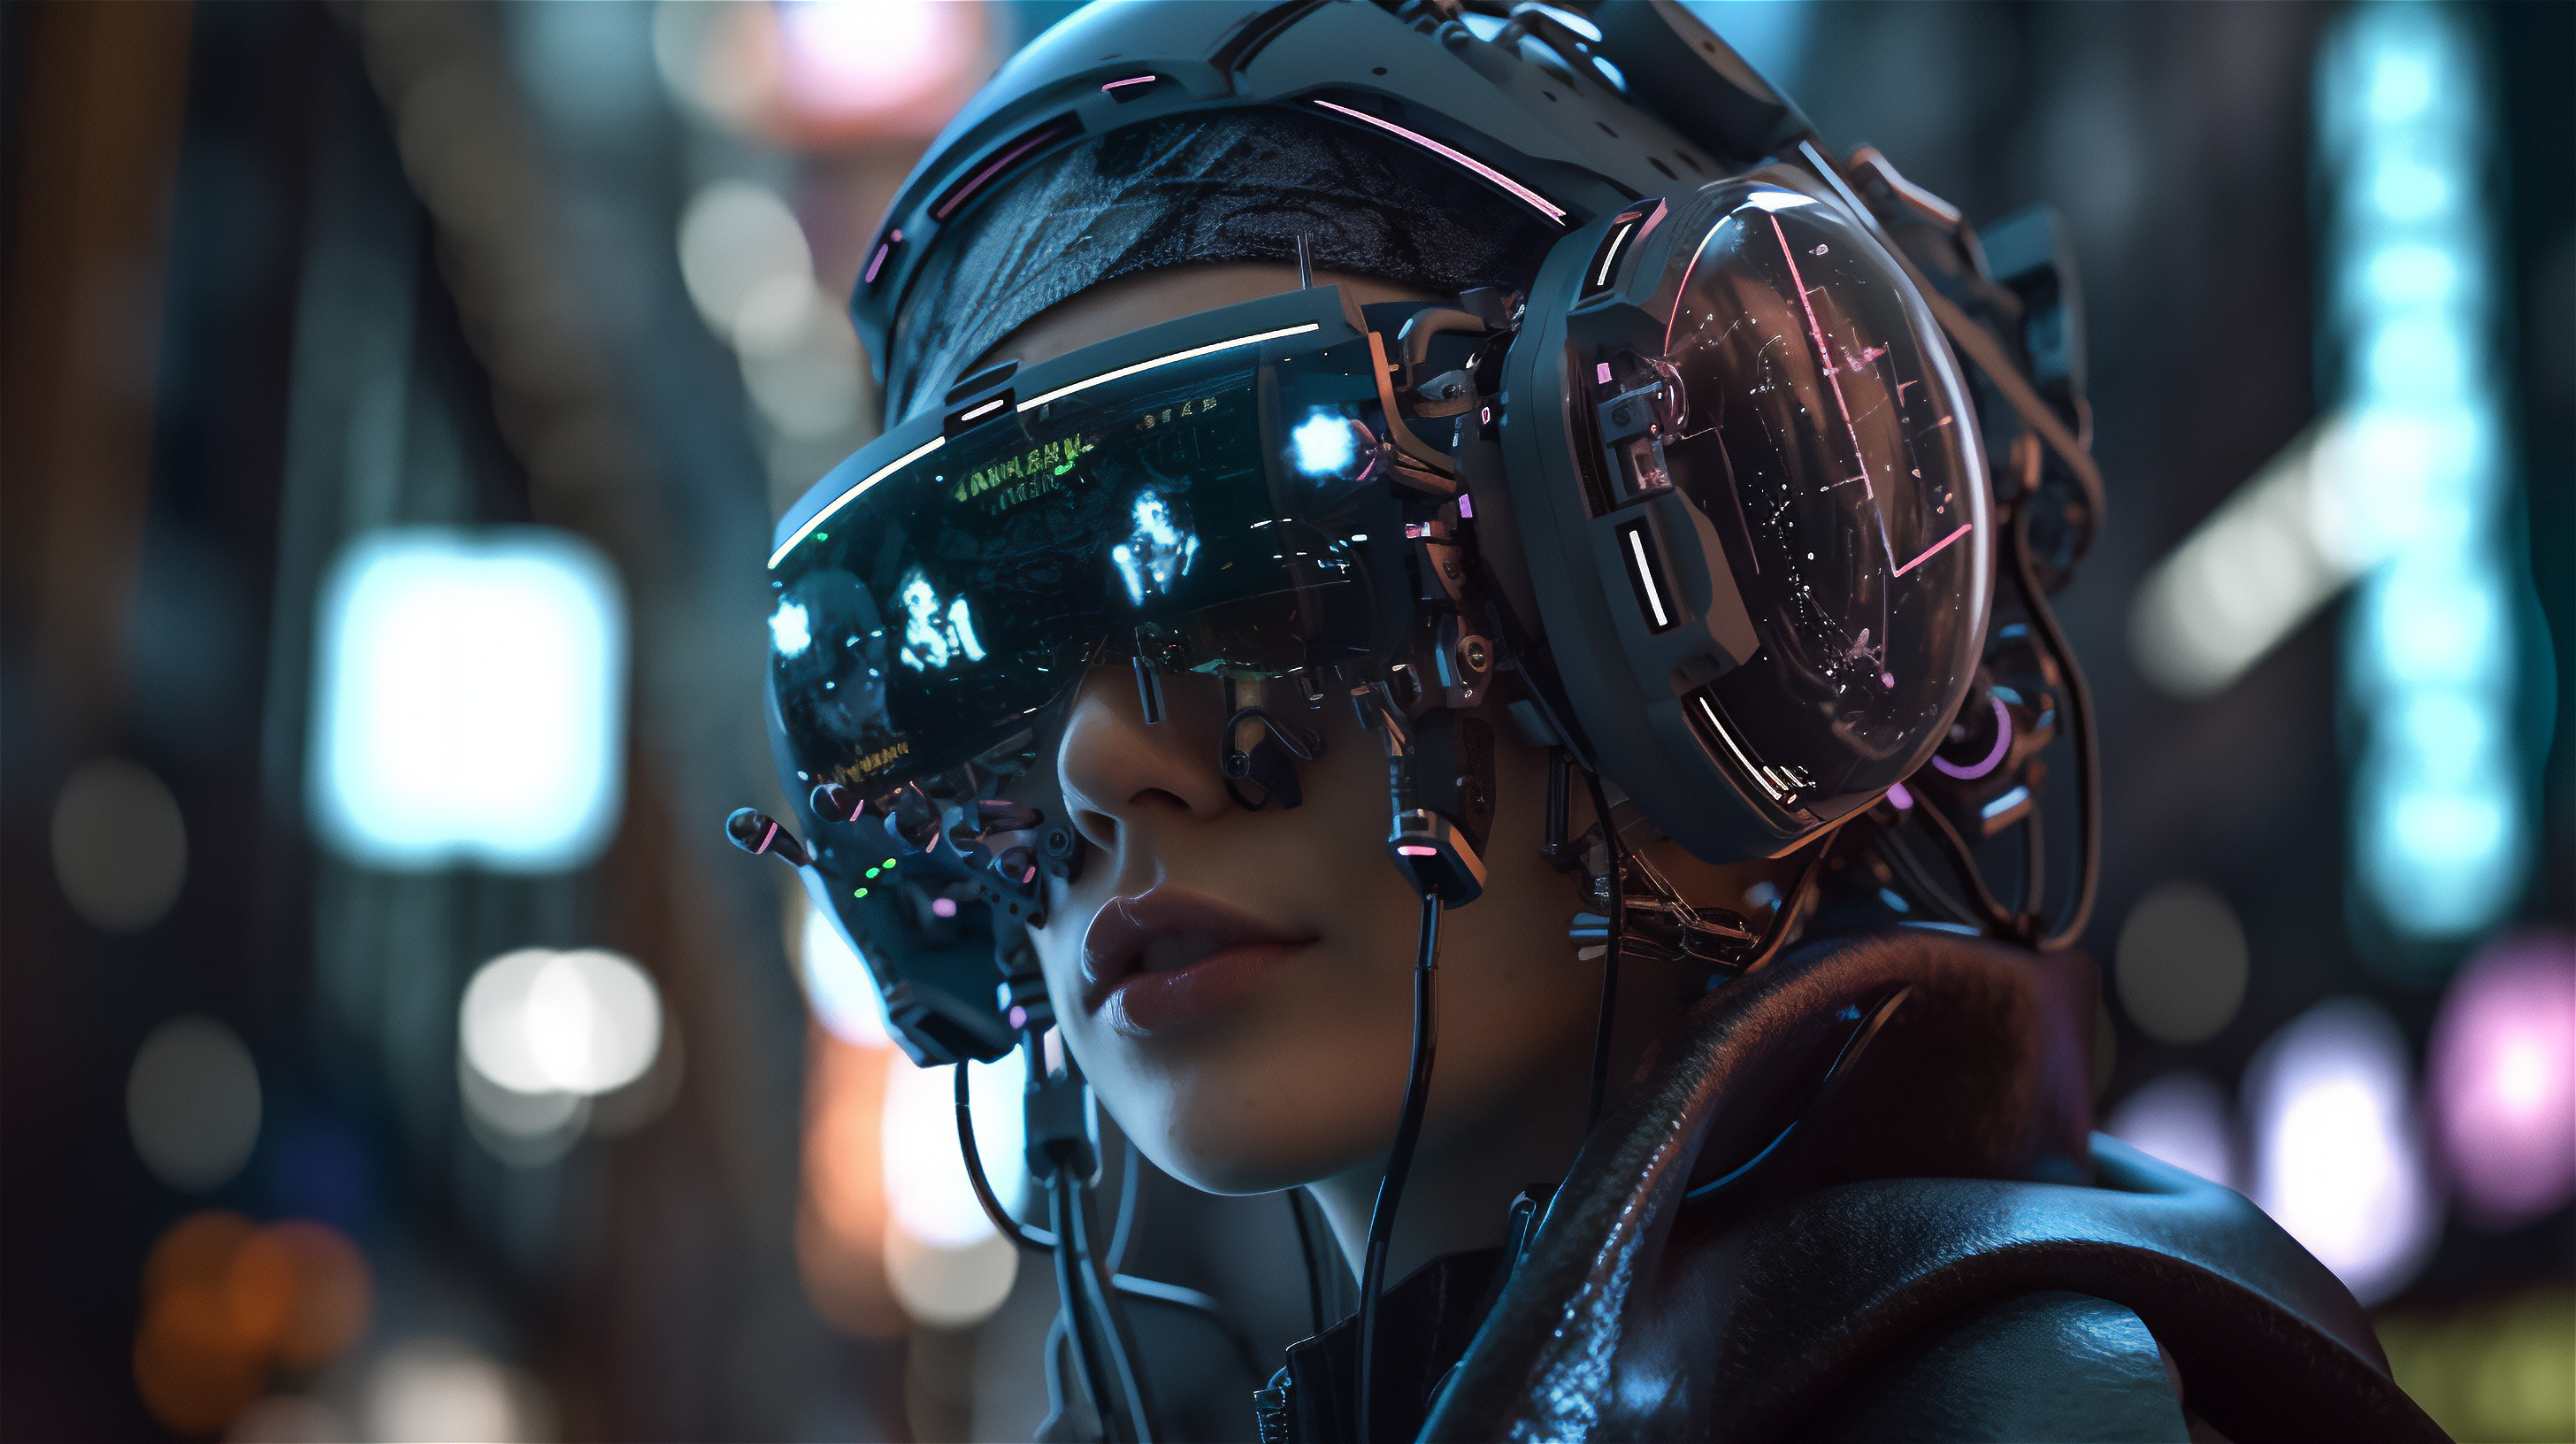 General 2912x1632 VR Headset AI art cyberpunk futuristic